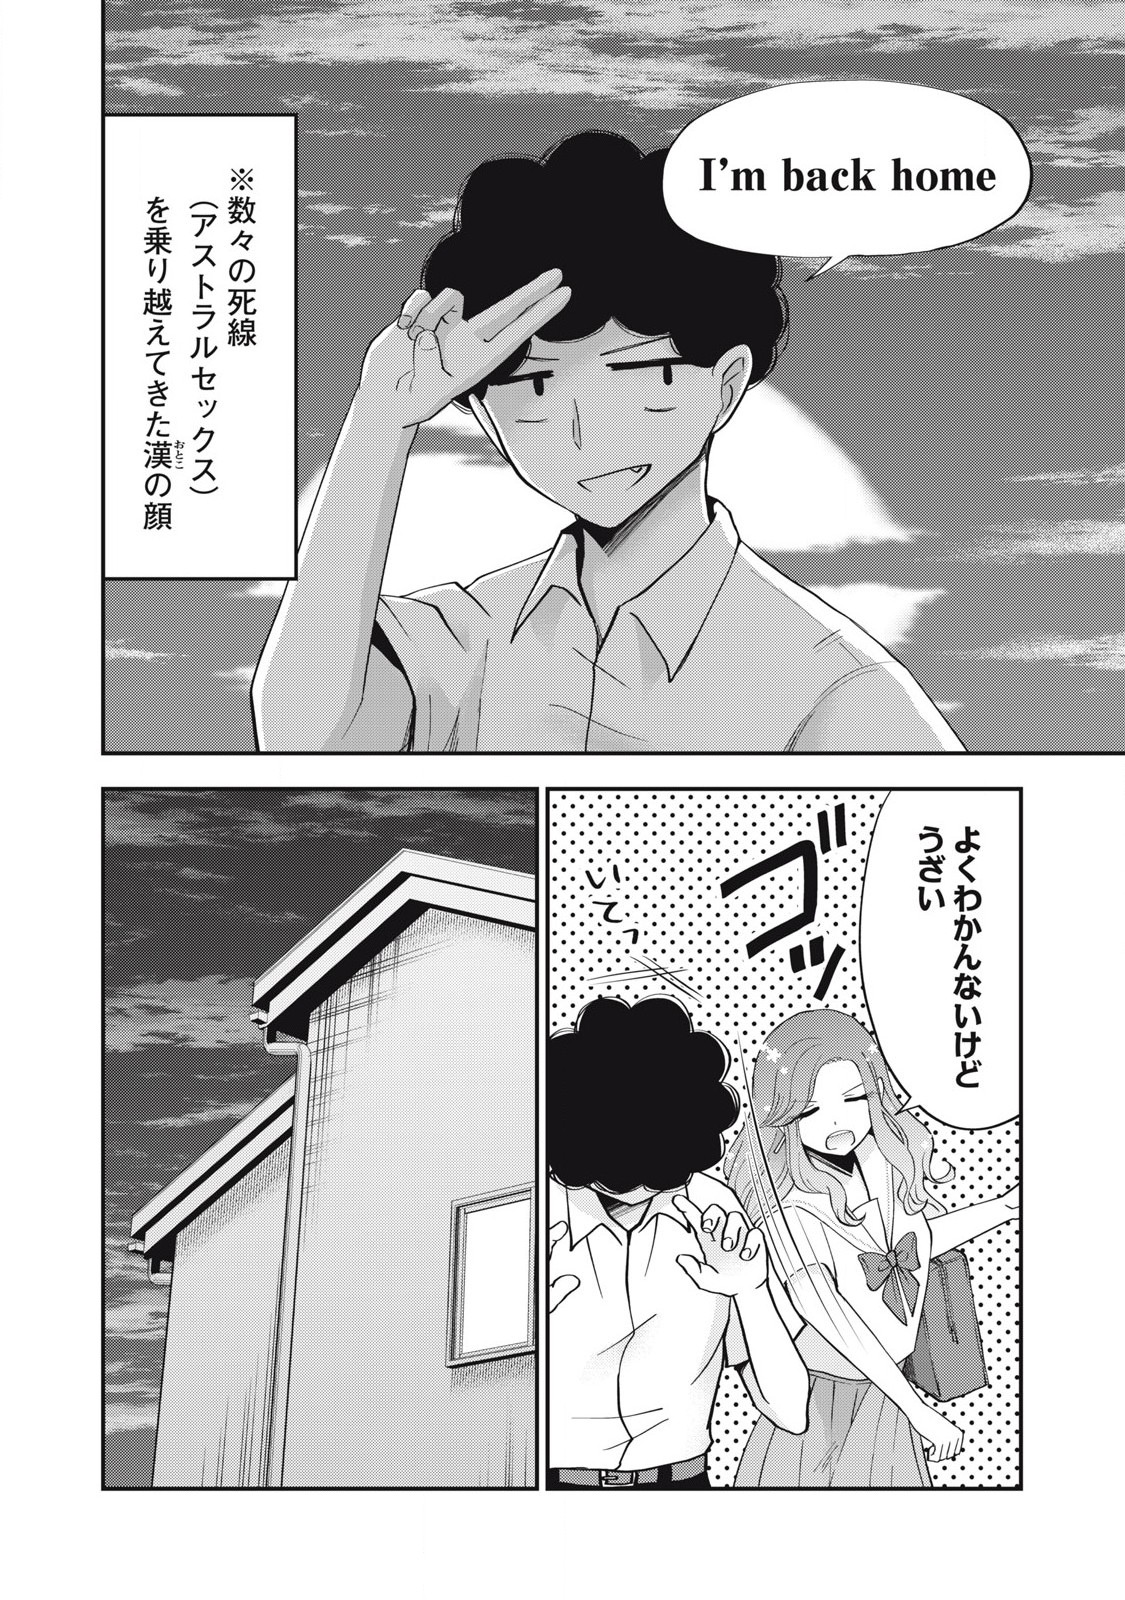 Yumeutsutsu no Hana no Sono - Chapter 15 - Page 2